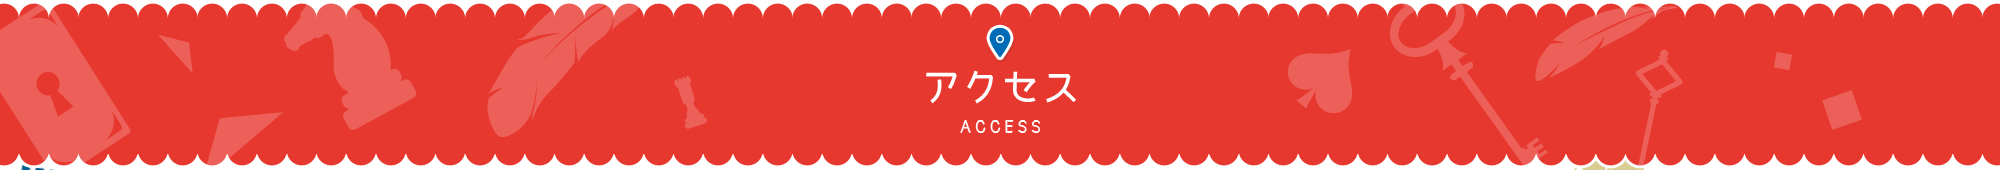 アクセス 公式 コンフォートスイーツ東京ベイ